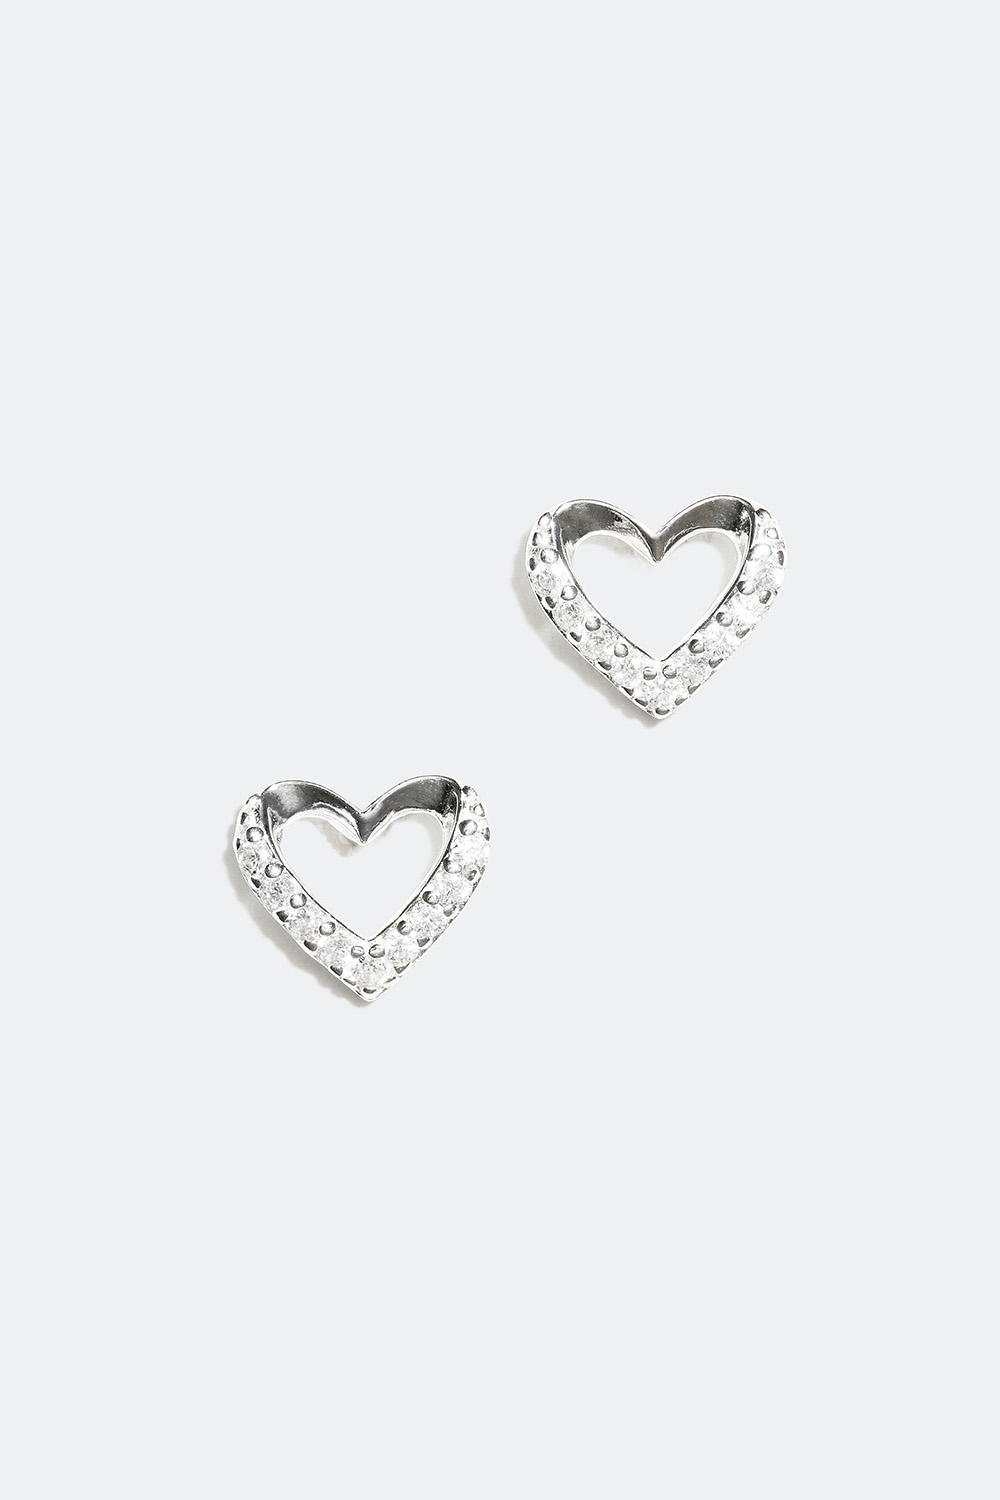 Sydämenmuotoiset nappikorvakorut aitoa hopeaa, koristeltu Cubic Zirconia -kivillä ryhmässä Aitoa Hopeaa / Hopeiset korvakorut @ Glitter (326955)